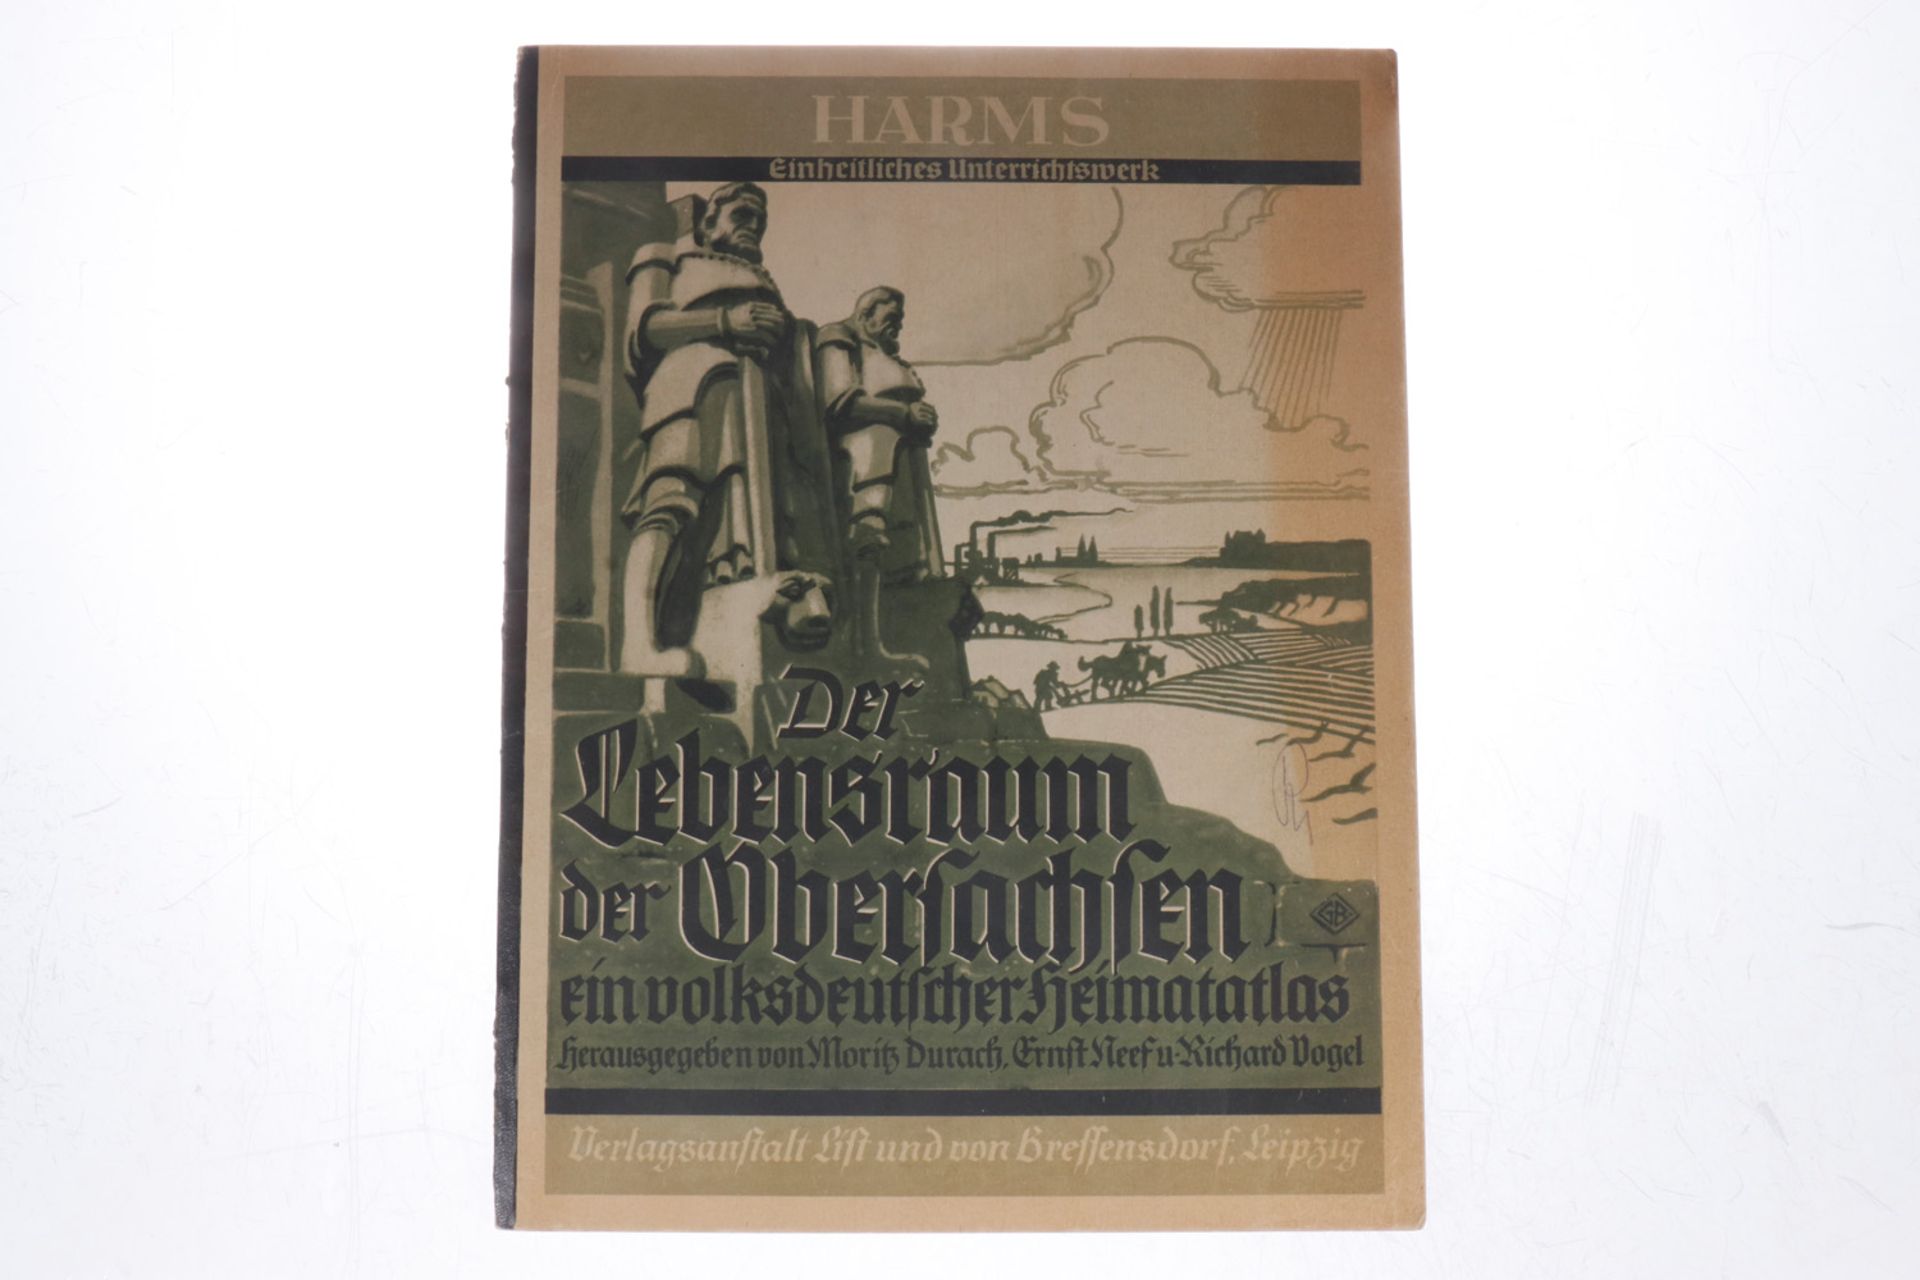 "Der Lebensraum der Obersachsen", "Ein volksdeutscher Heimatatlas", herausgegeben von Moritz Durach,